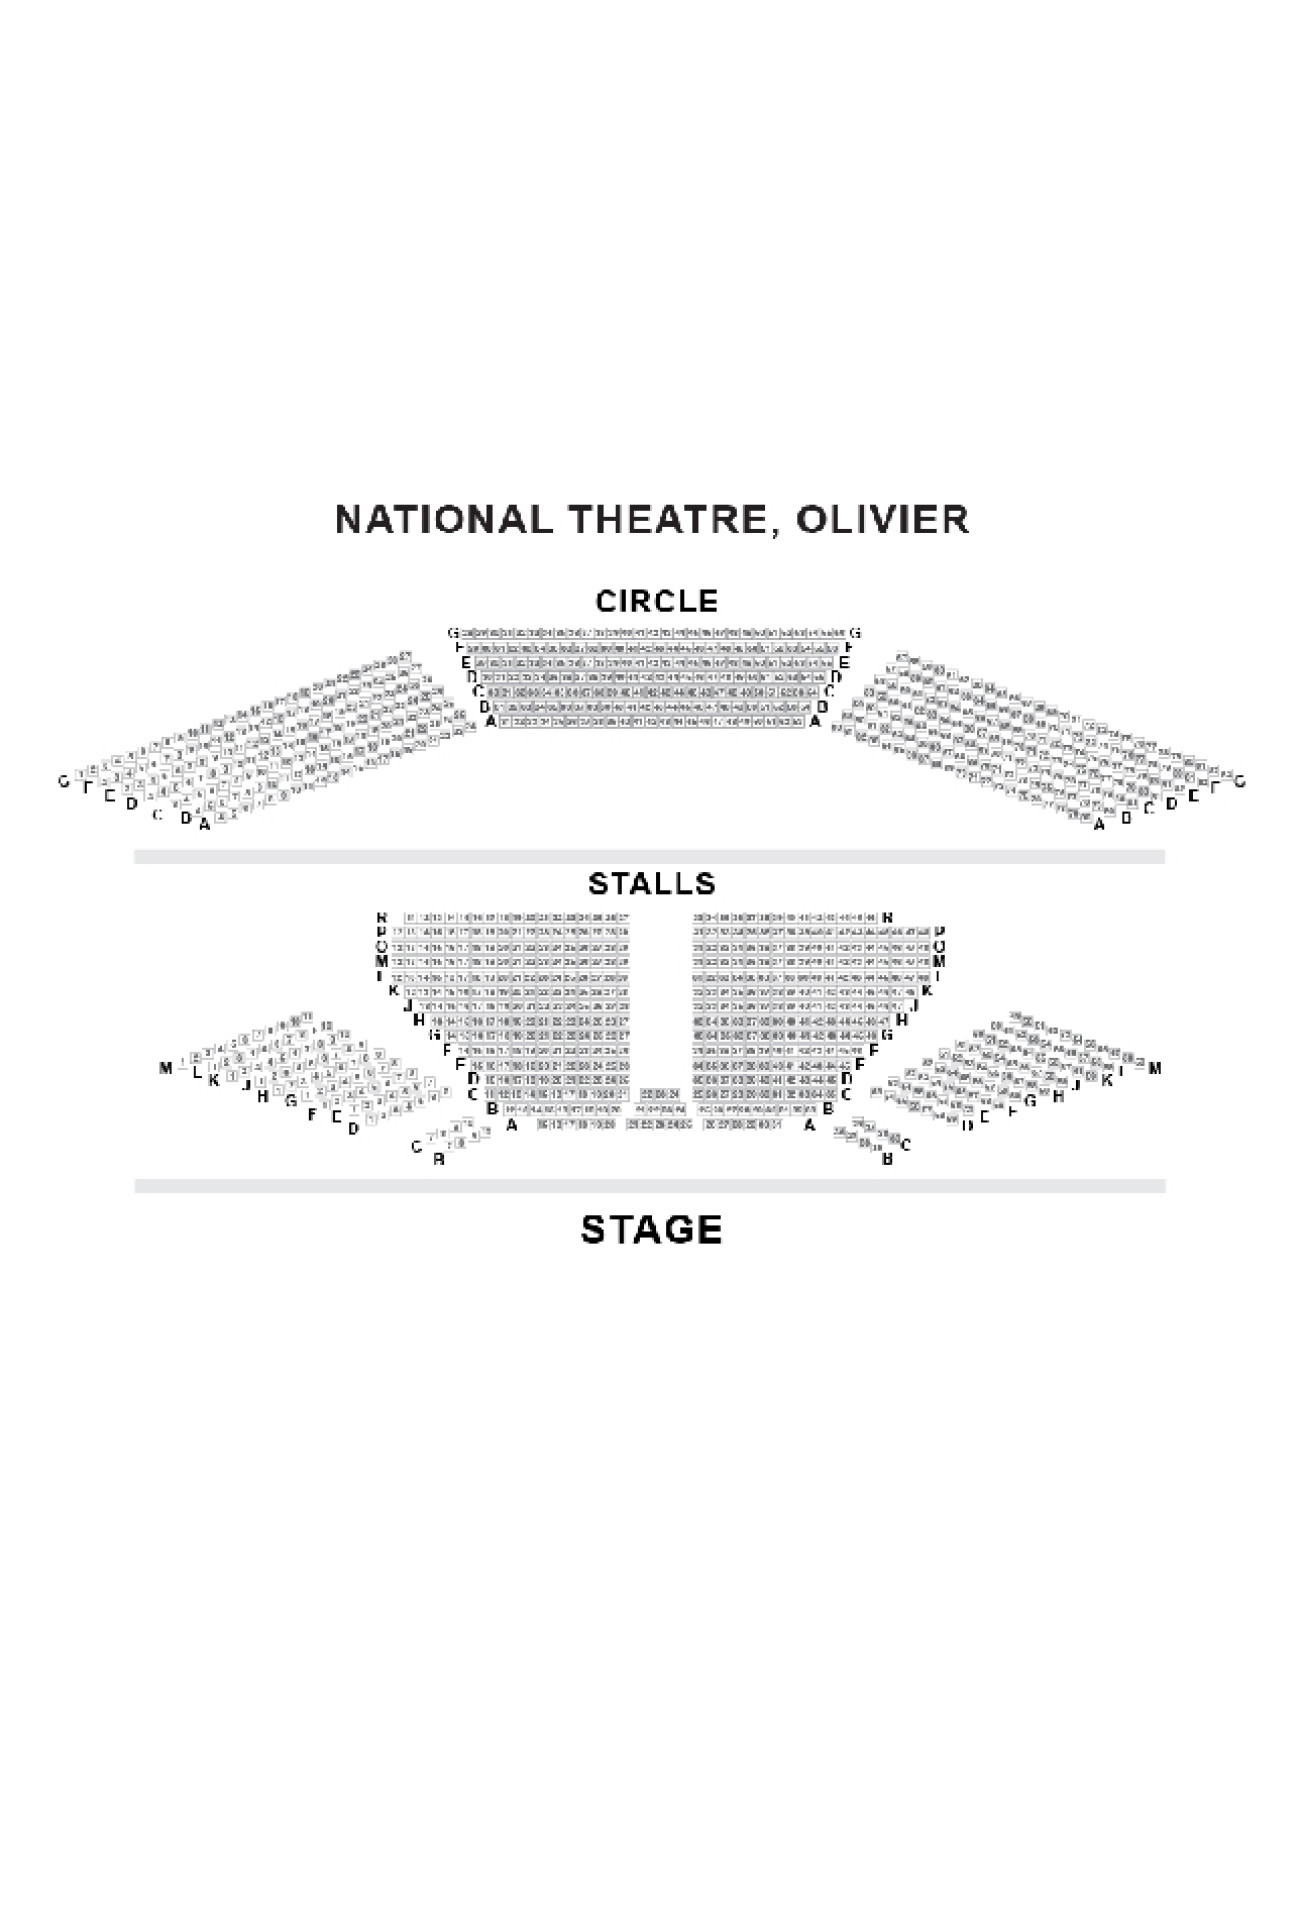 Plano de asientos de Olivier Theatre (National Theatre)